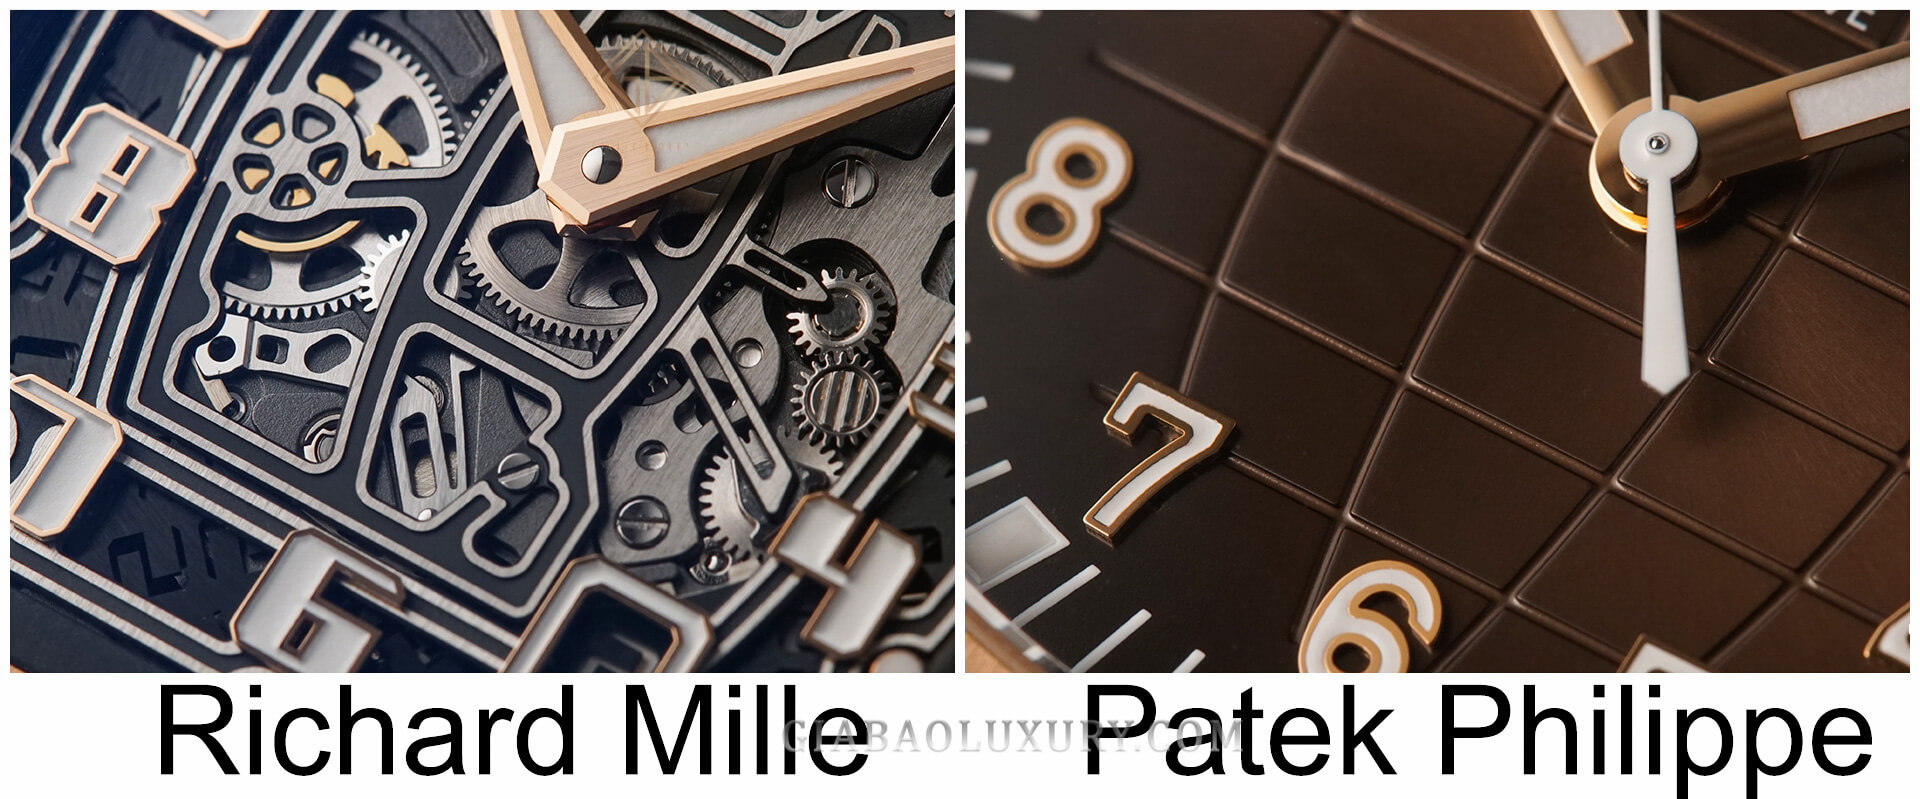 Đồng hồ thể thao cao cấp của Patek Philippe và Richard Mille - Gã khổng lồ và chú bé tí hon?